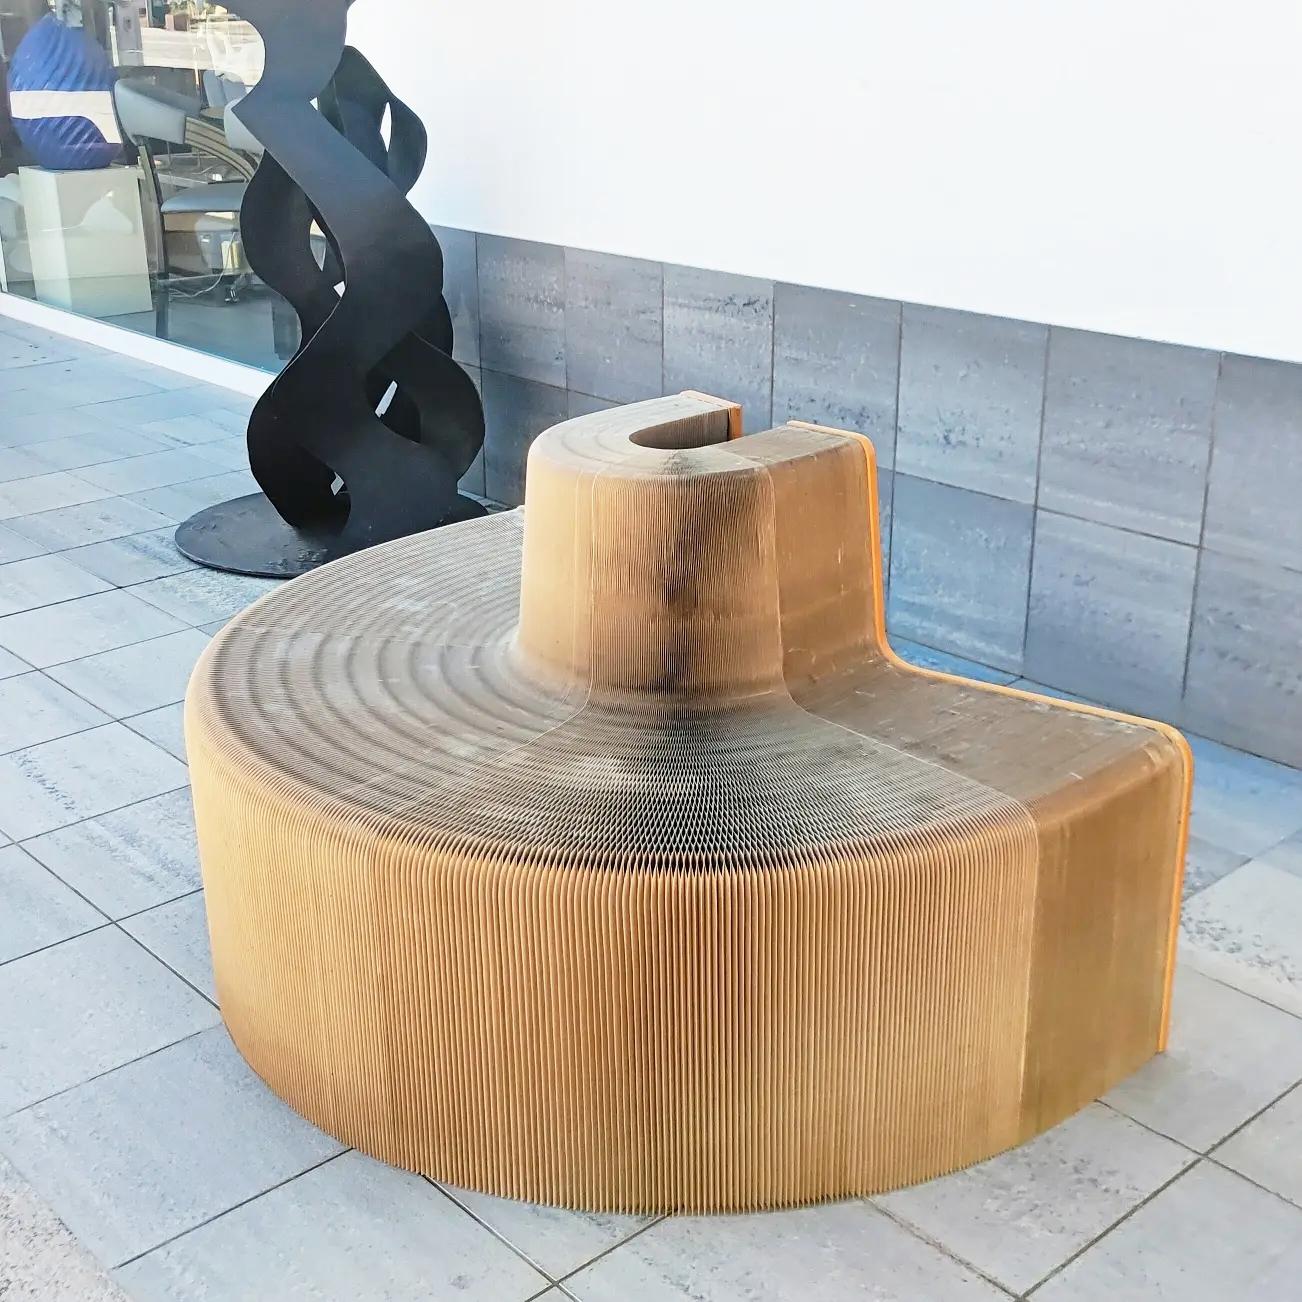 Très rare fauteuil extensible Chishen Chiu Flexible Love fabriqué au début des années 2000.
Ce projet est axé sur la communauté et le partage des interactions sociales.
Conçu par l'artiste taïwanais Chishen Chiu, ce canapé accrocheur est fabriqué